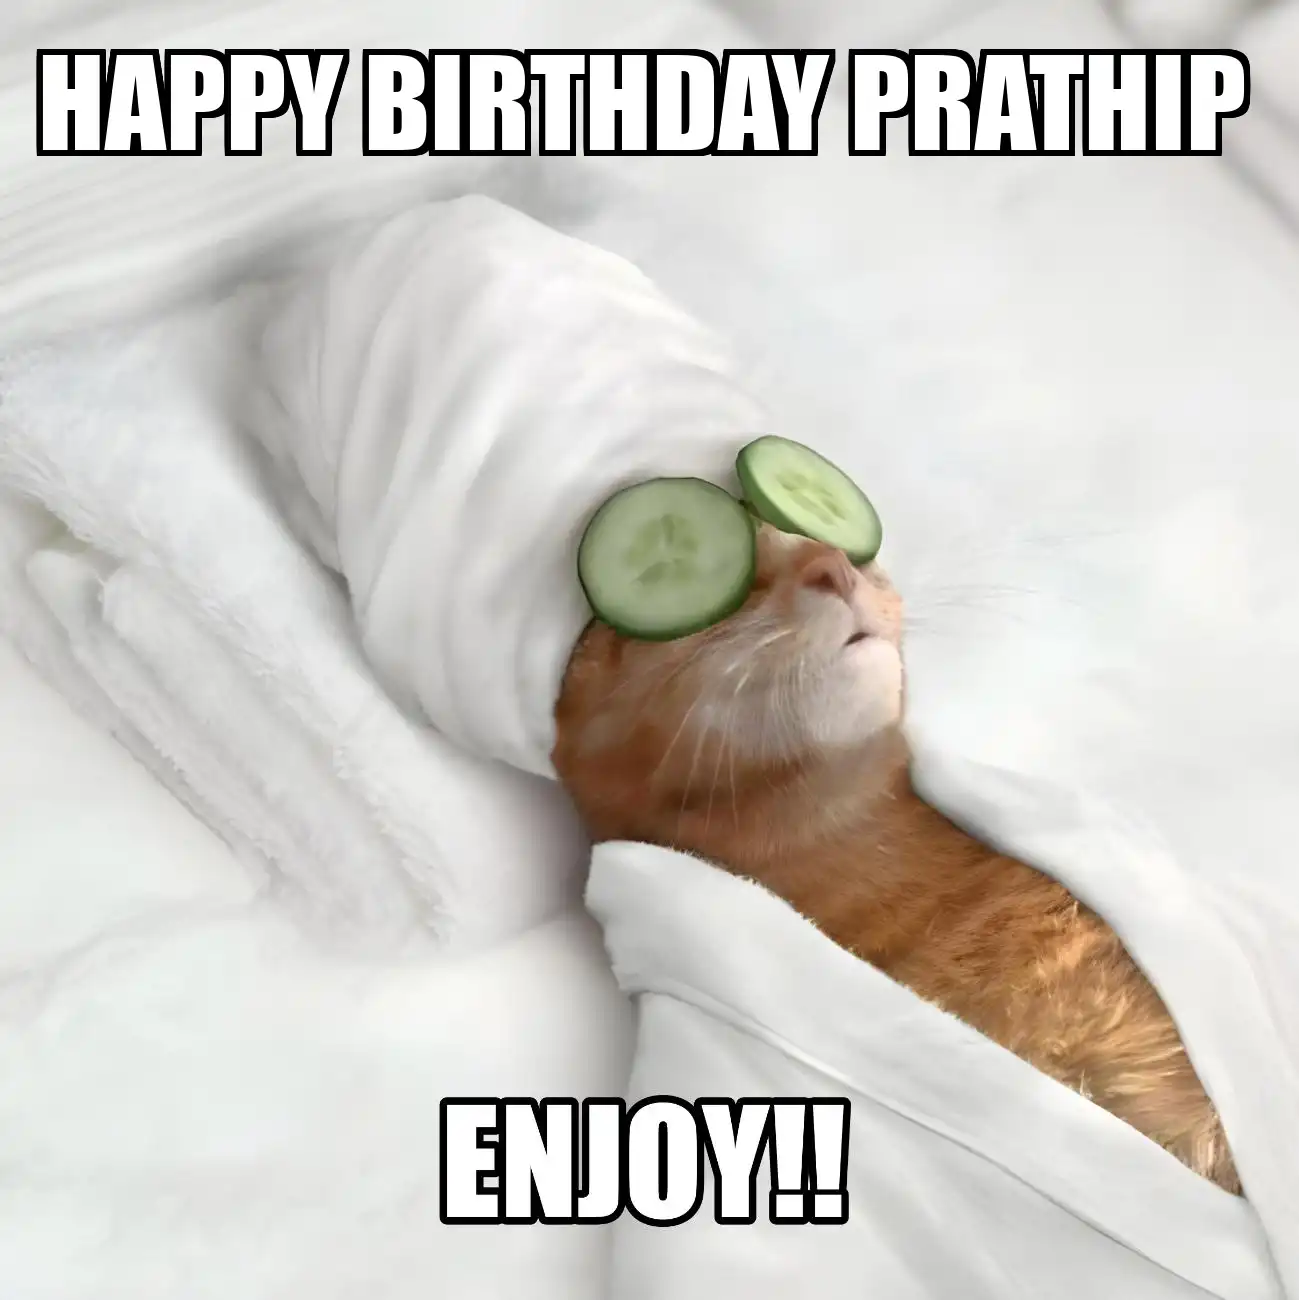 Happy Birthday Prathip Enjoy Cat Meme